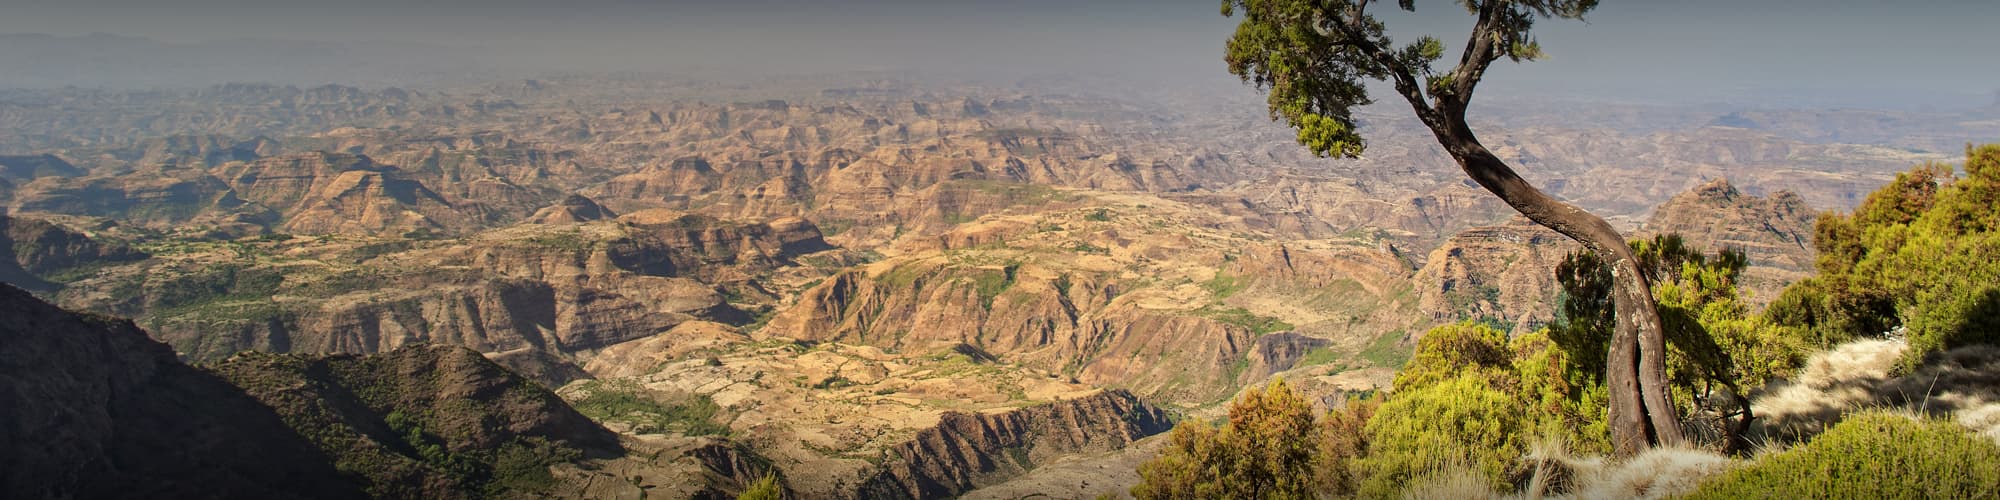 Randonnée Ethiopie © Guenter Guni / iStock